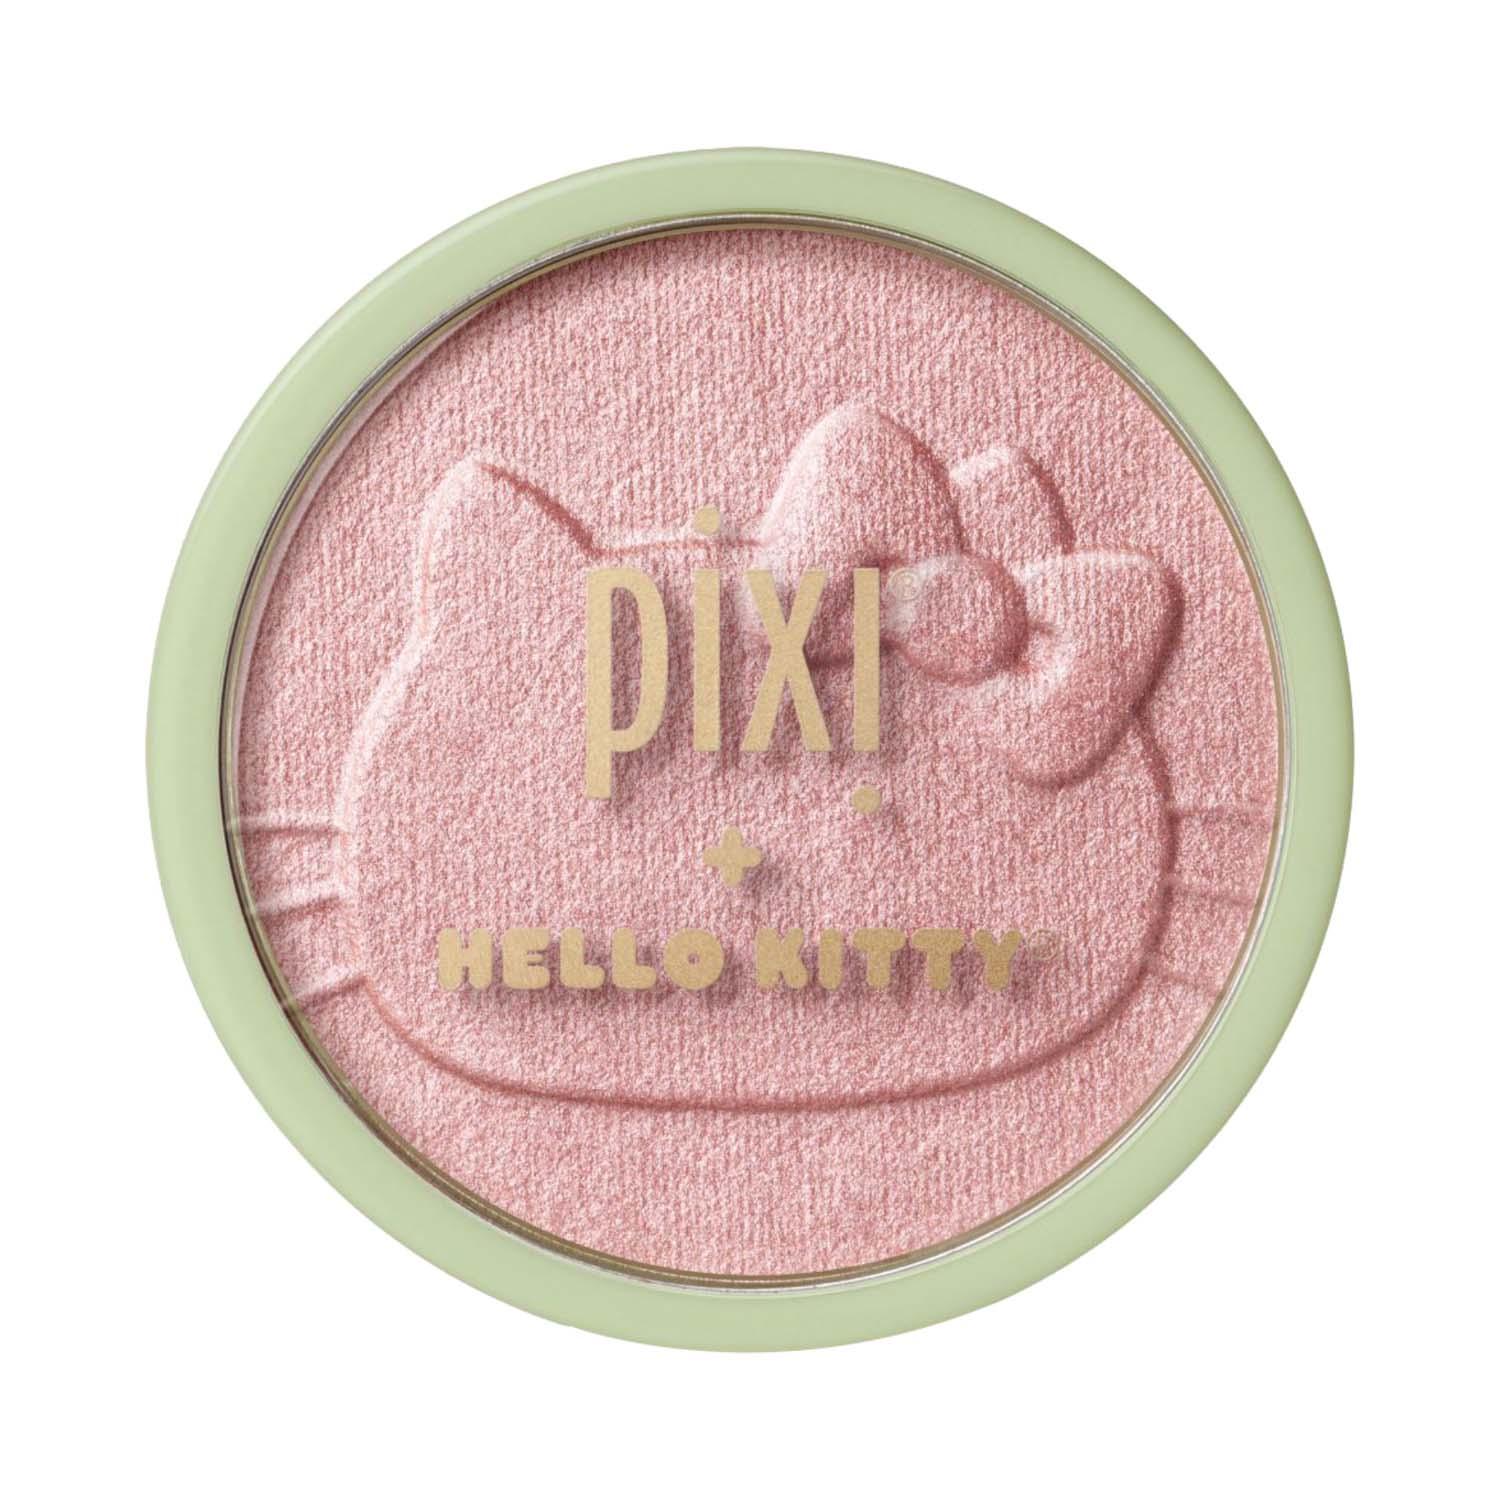 PIXI | PIXI Hello Kitty Hello Glowy Blush Powder - FriendlyBlush (10 g)